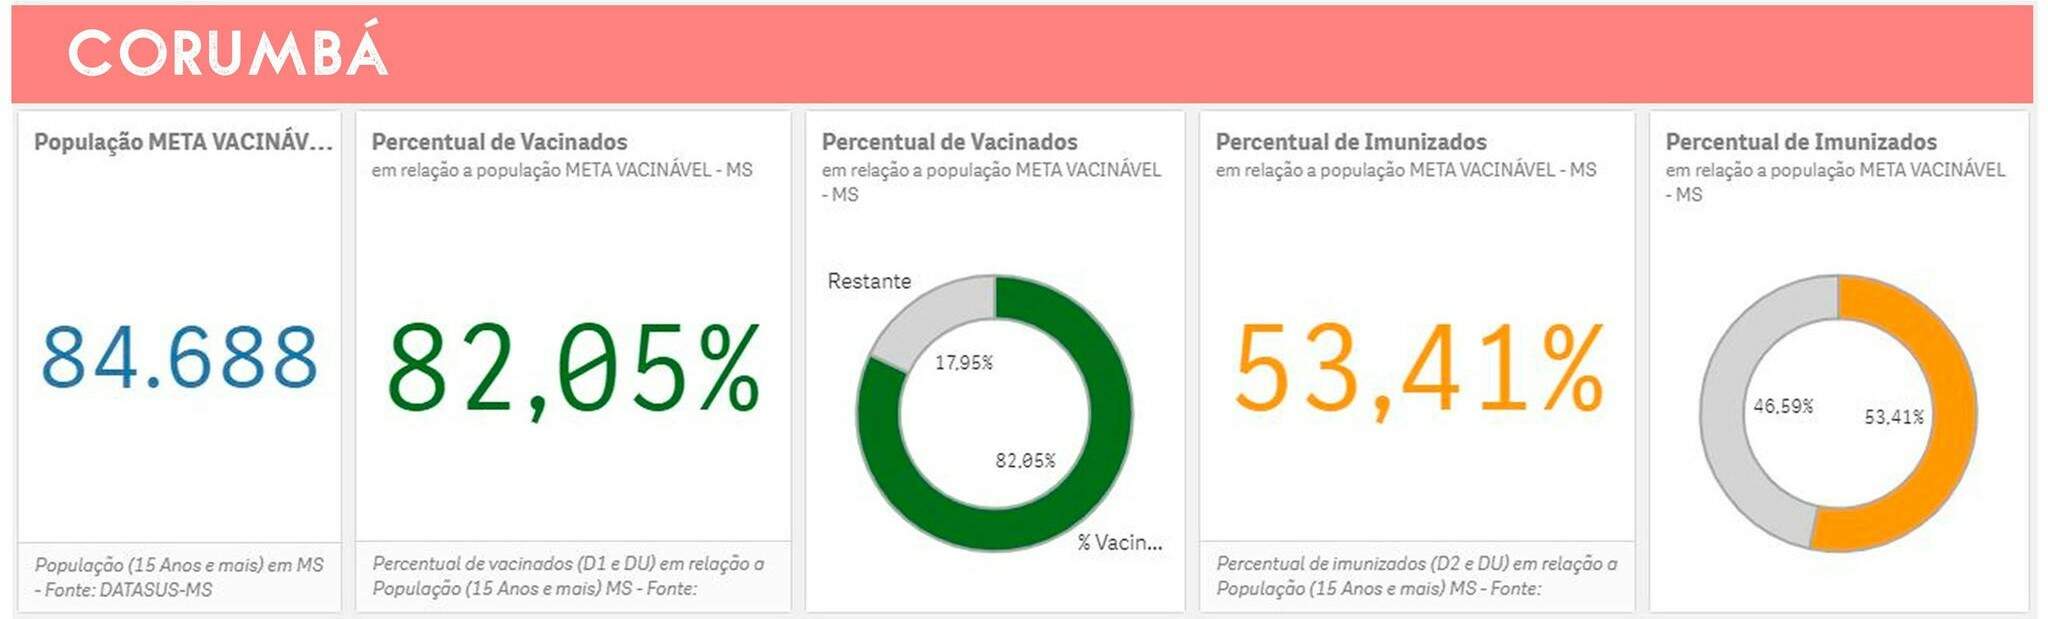 corumba 4vZRK2B - Vacinação em massa: cobertura variou de 105% a 73% nas cidades do estudo em MS